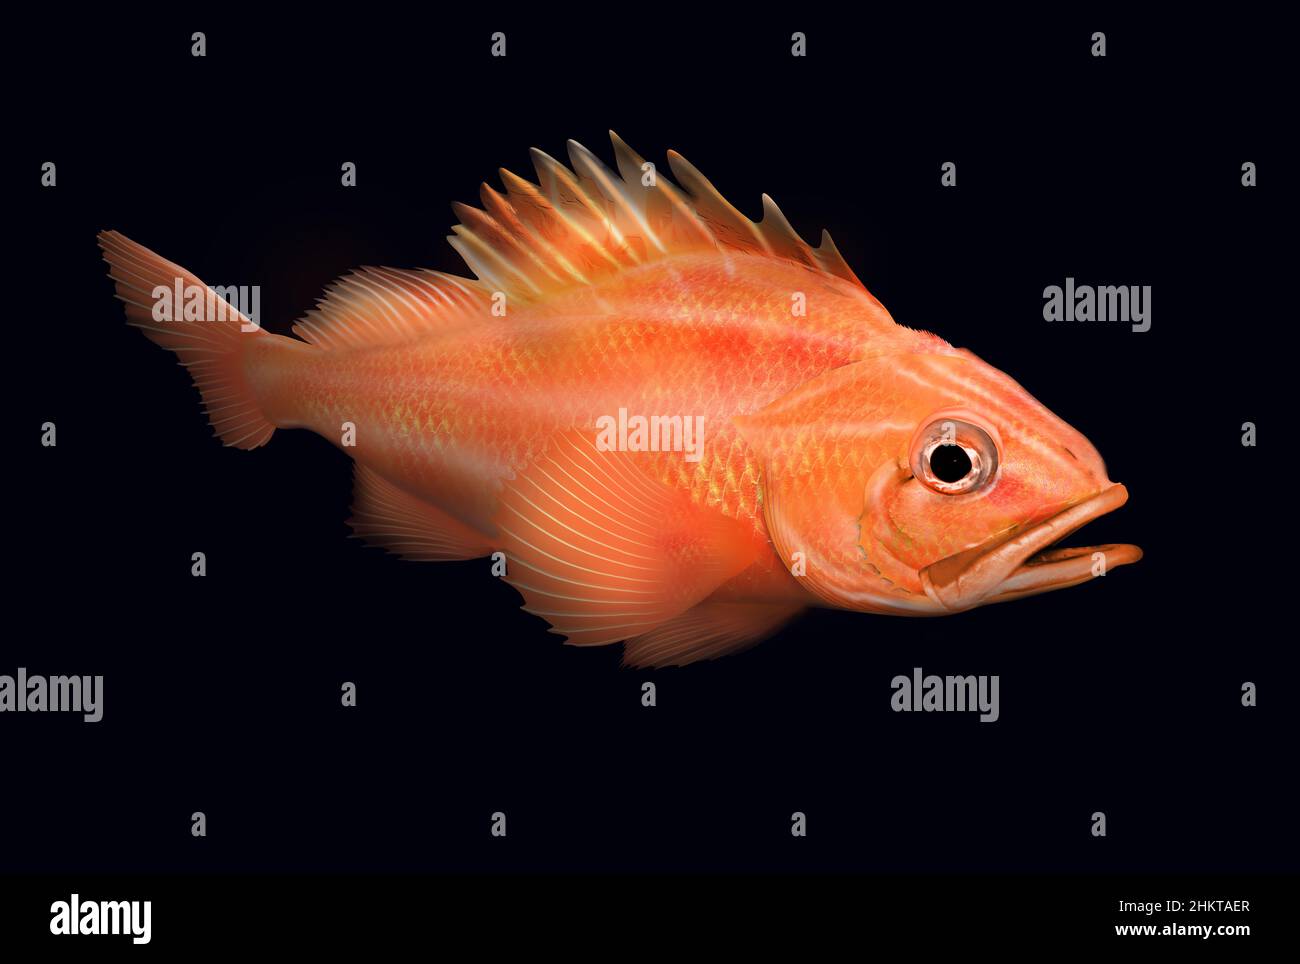 Il pesce rocca della ruvidità, il sebastes aleutianus anche conosciuto come il pesce rocca della gola nera o il pesce rocca della punta nera isolato sul rendering nero nel mare profondo. Foto Stock